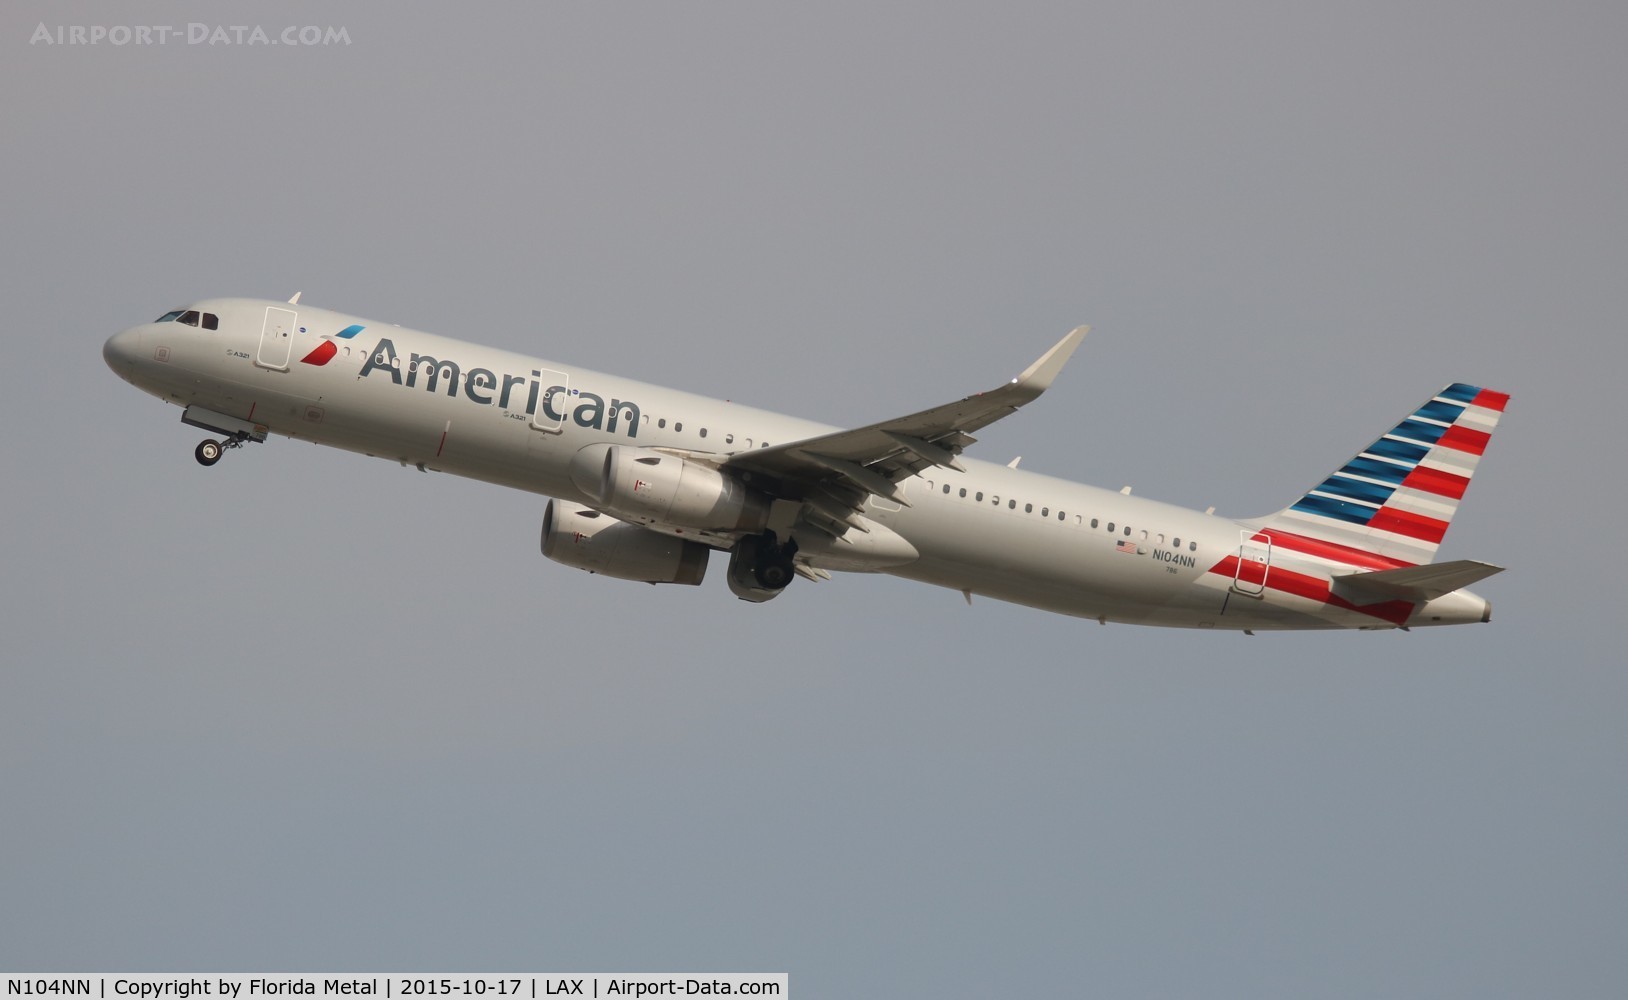 N104NN, 2013 Airbus A321-231 C/N 5895, American